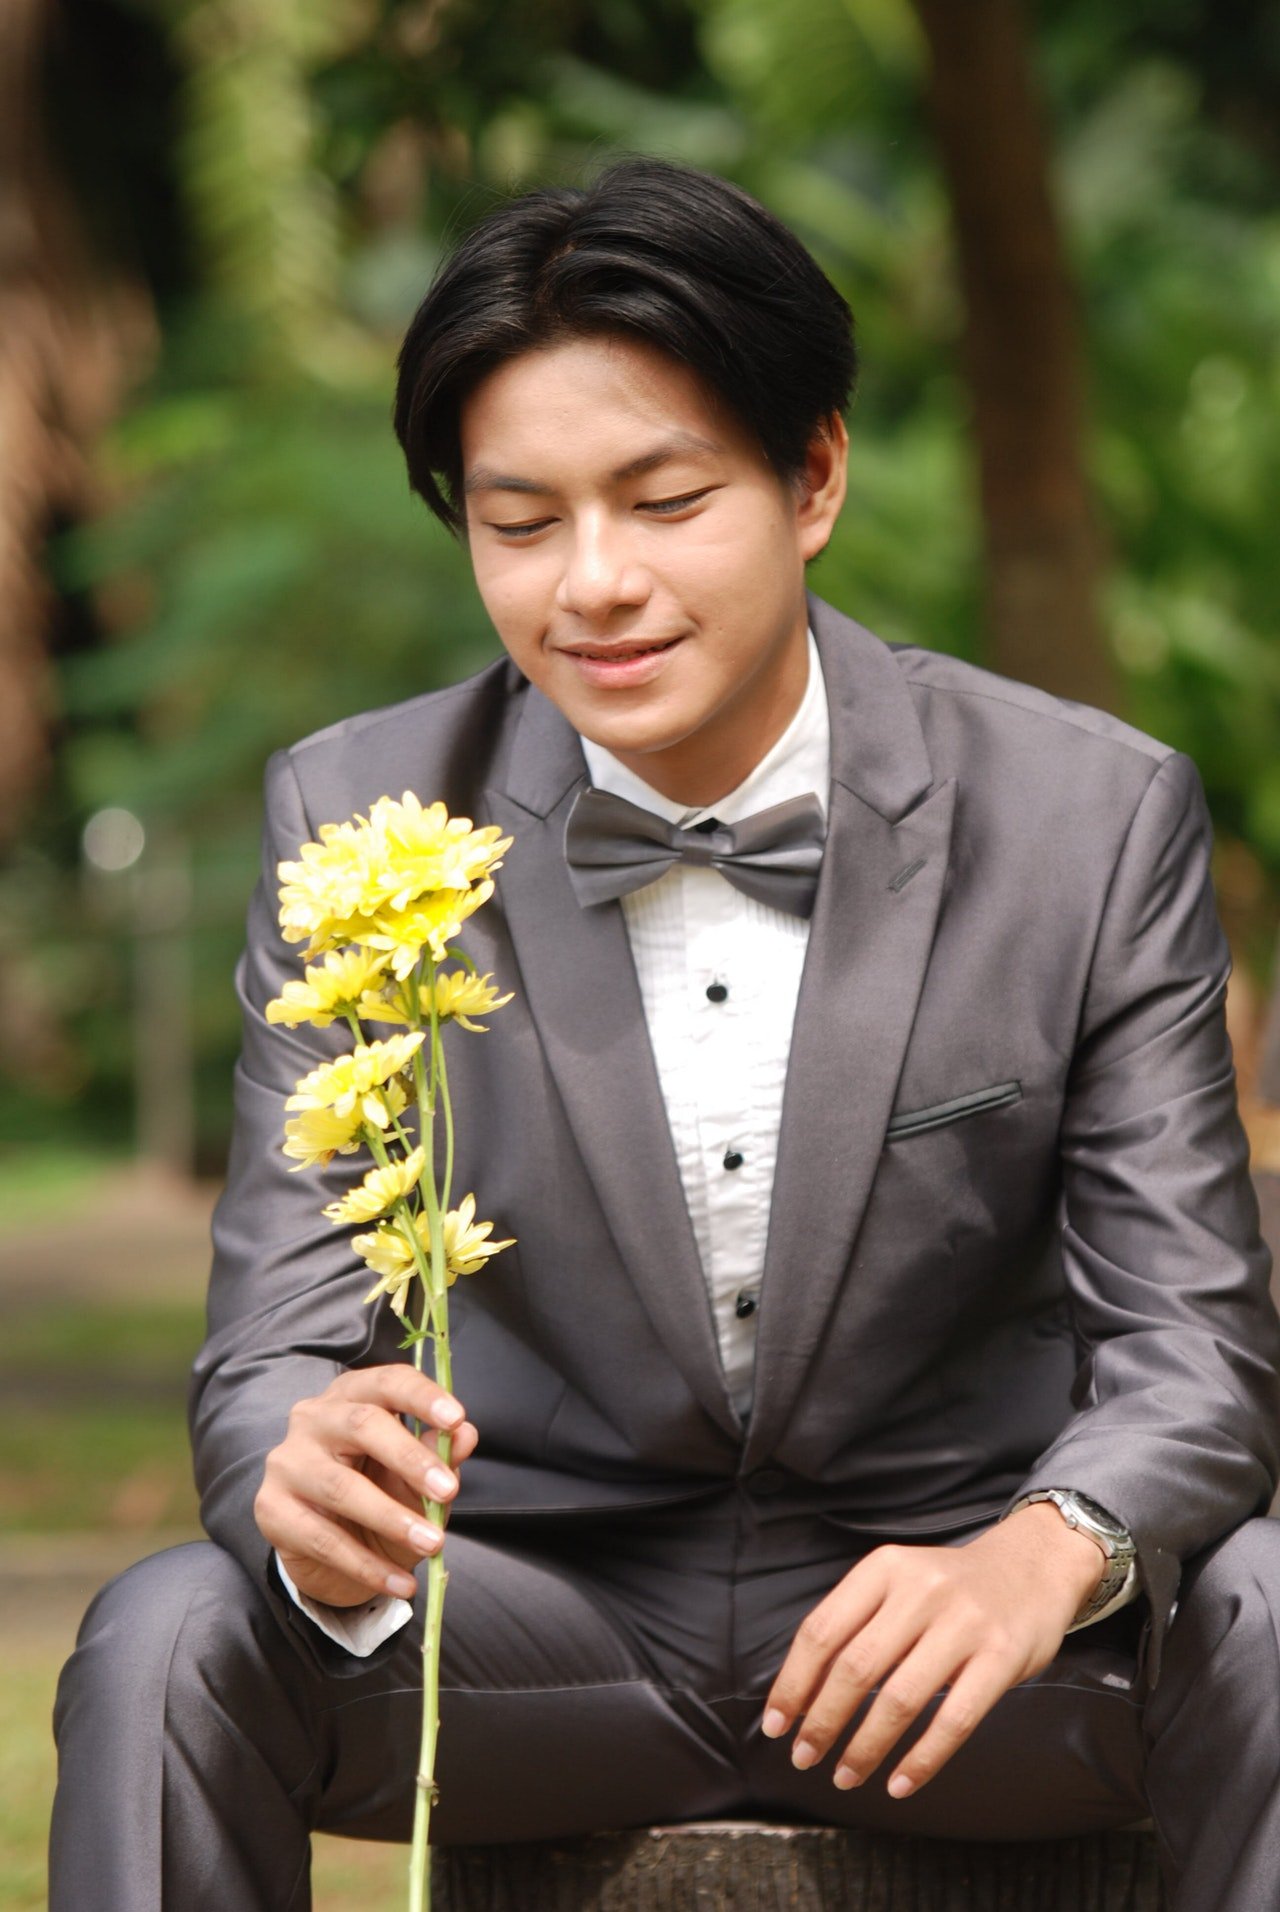 Un elegante hombre joven con una flor en su mano. | Foto: Pexels